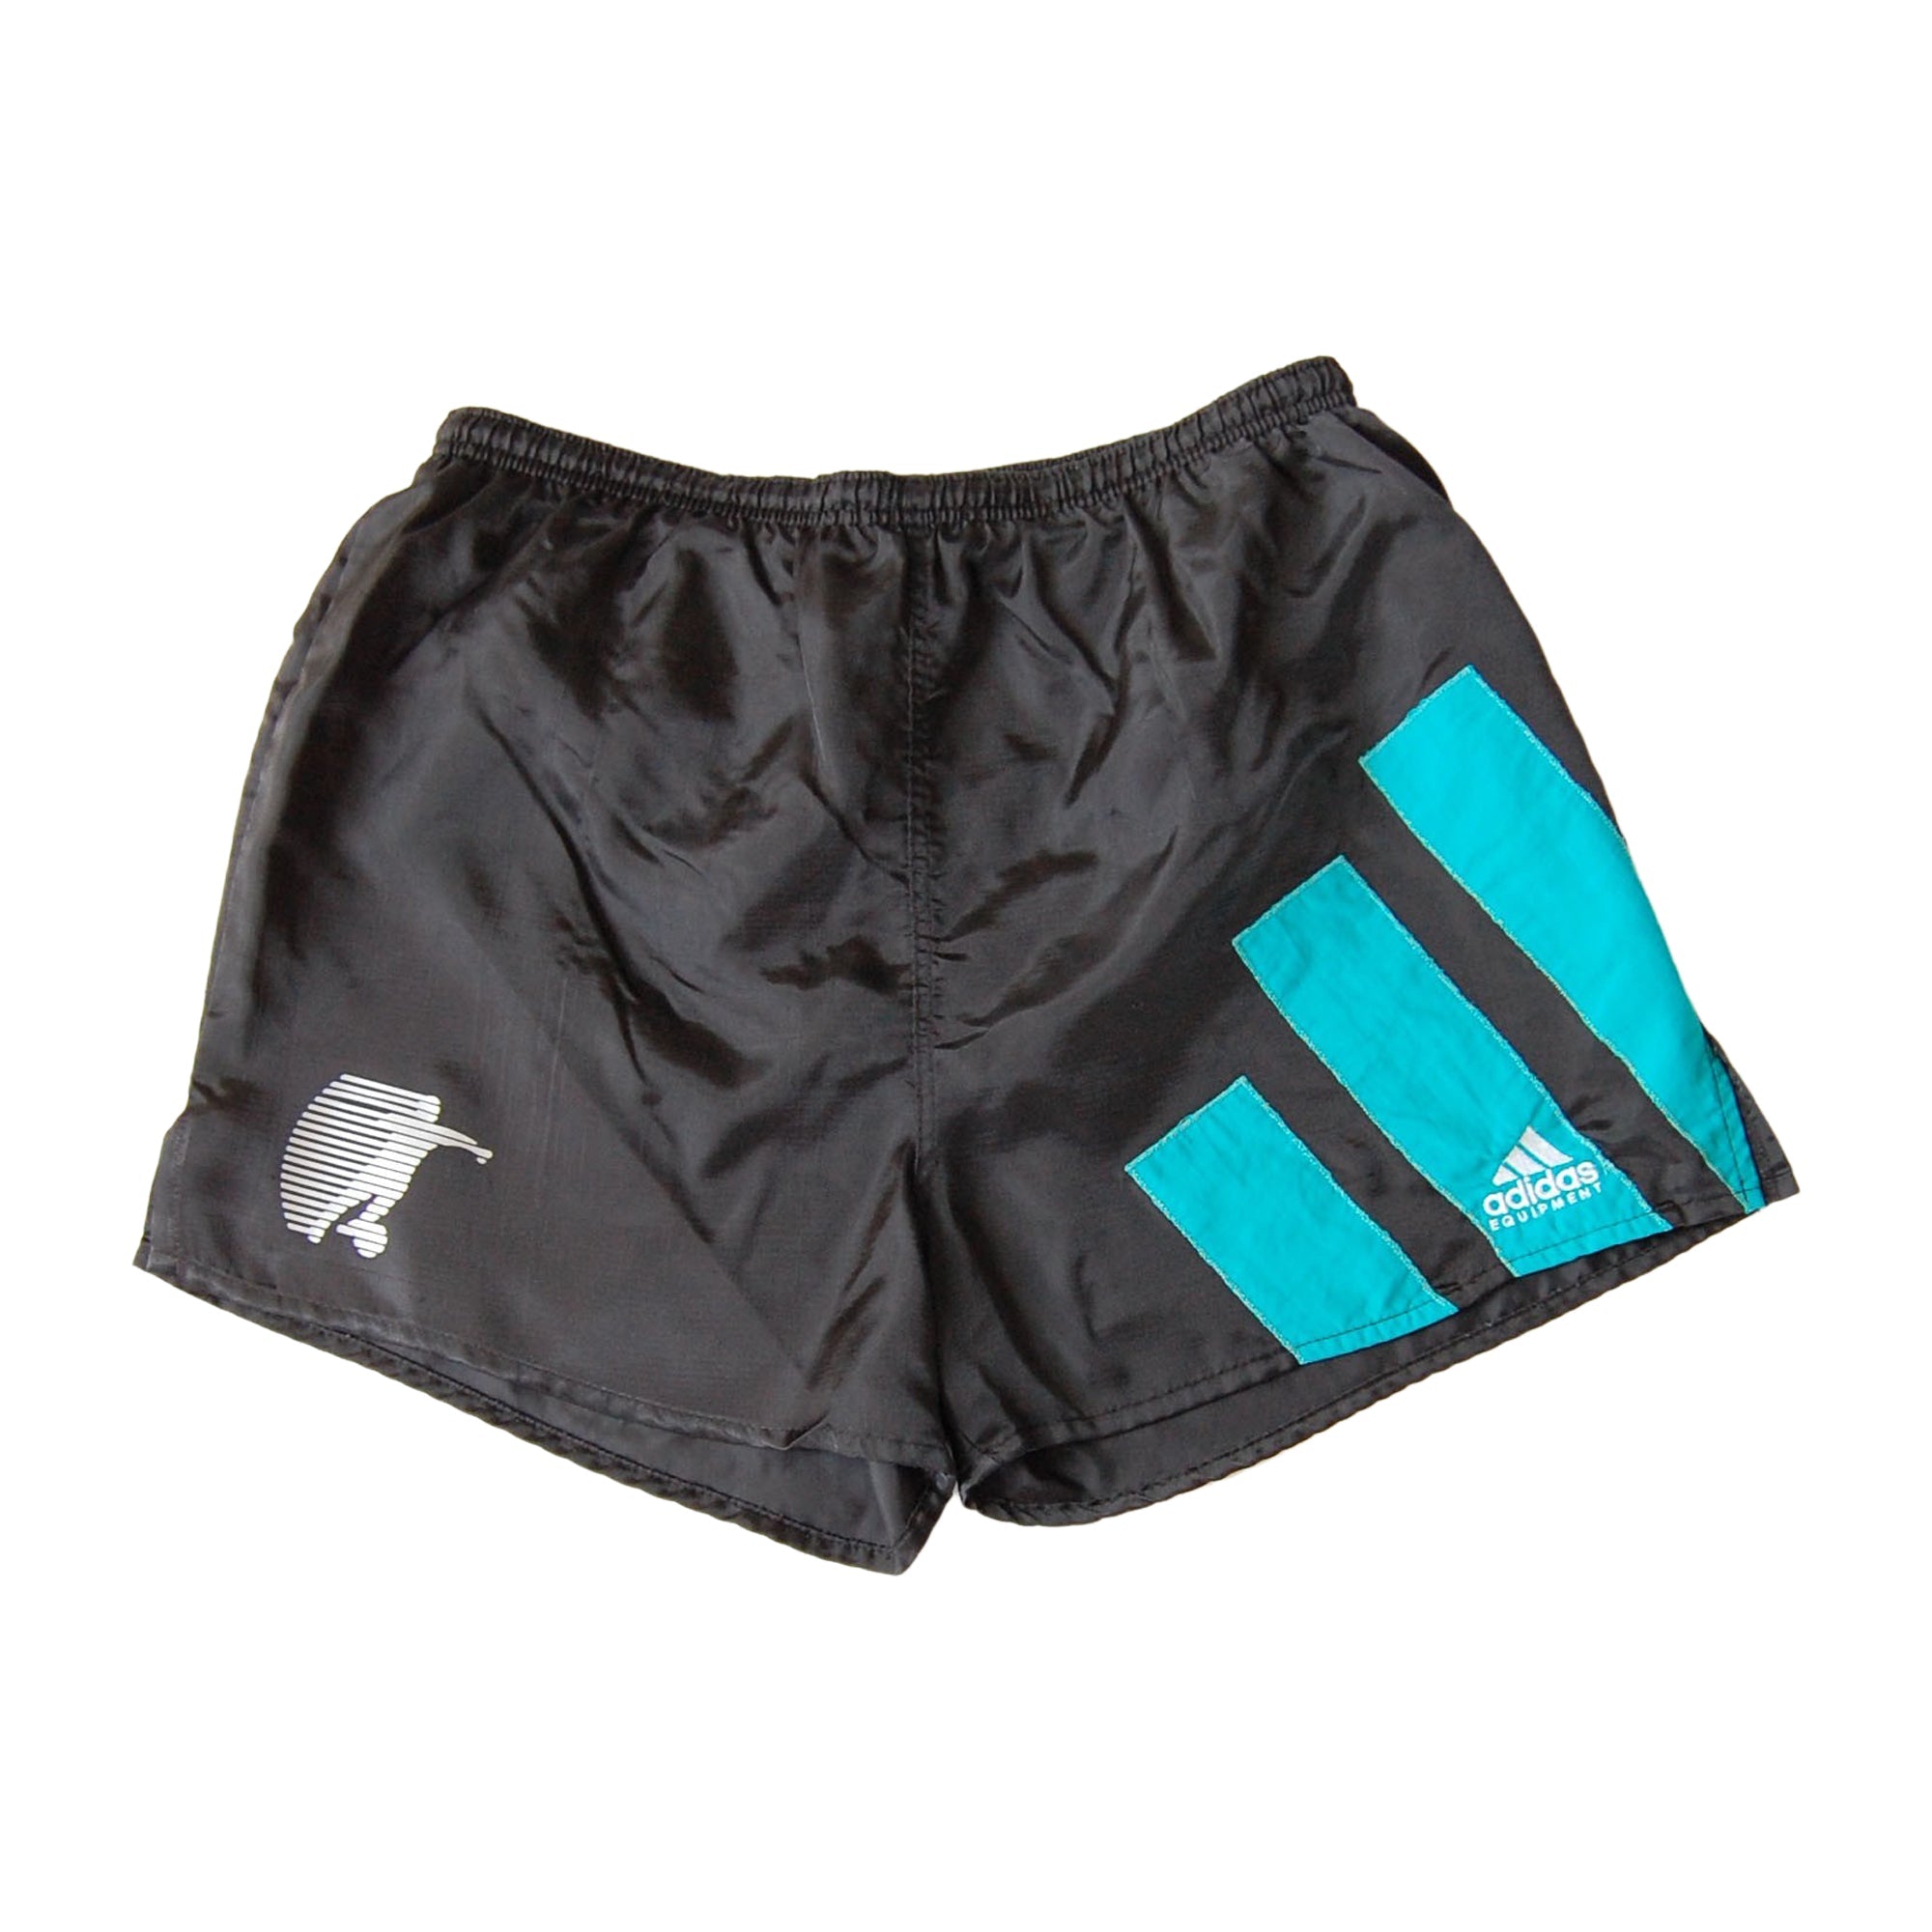 Adidas Equipment Nylon Shorts - L